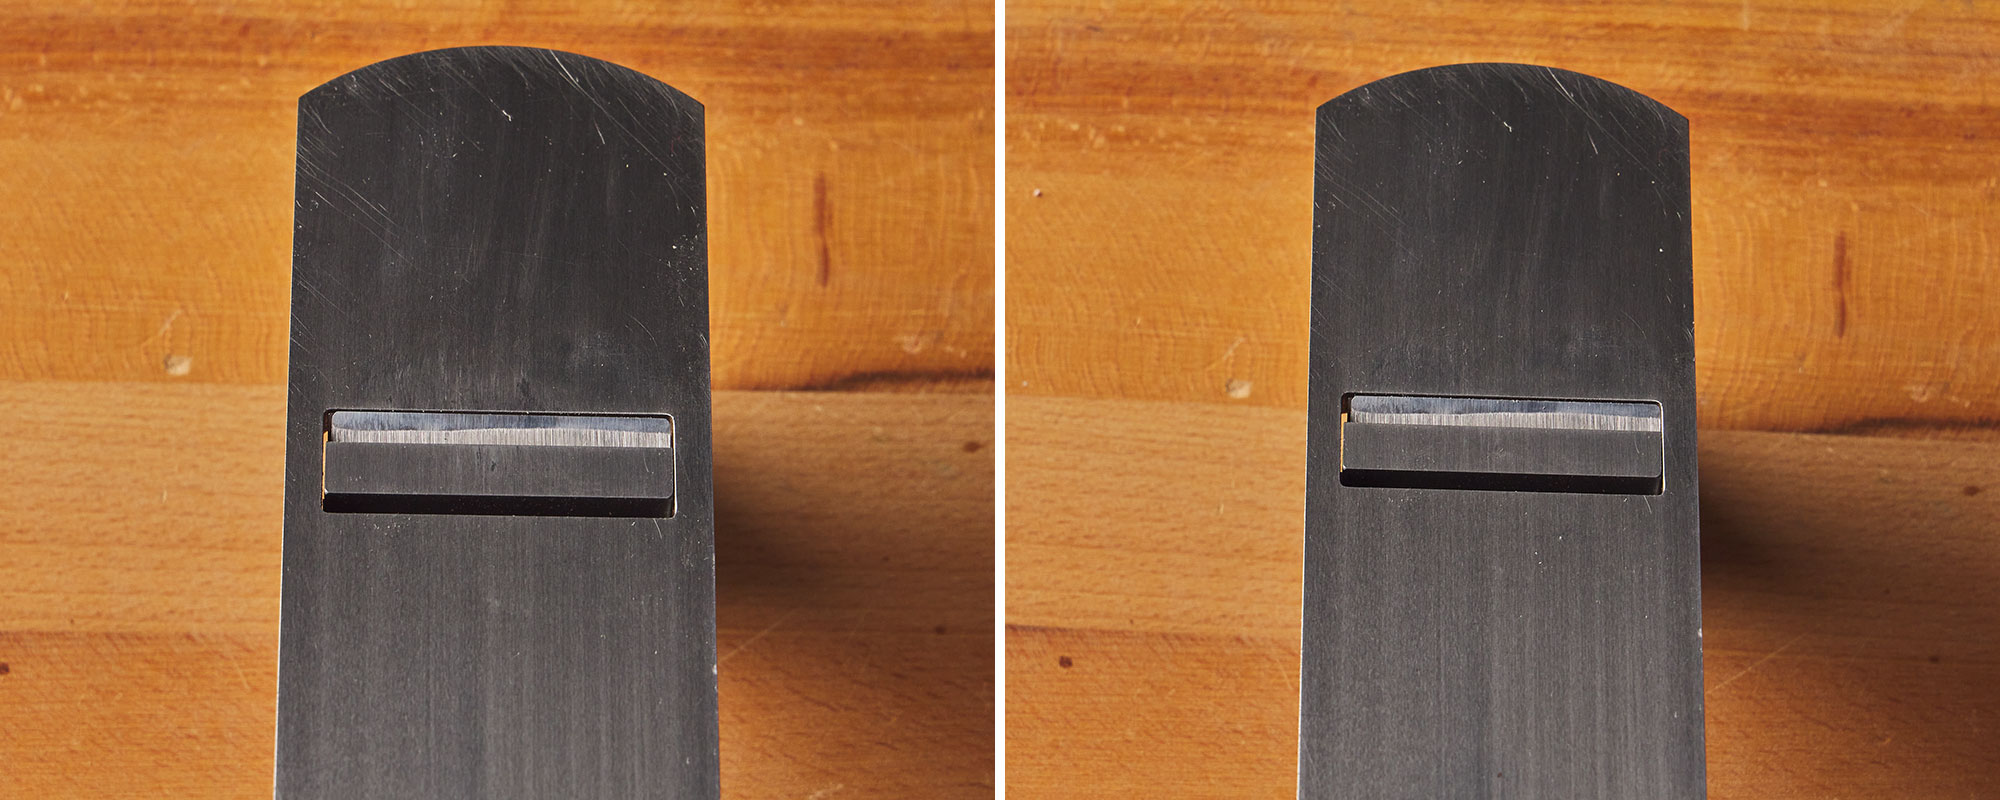 Image de gauche : Rabot vu de dessous avec sa lame non parallèle à  la lumière. Image de droite : Rabot vu de dessous avec sa lame parallèle à la lumière.